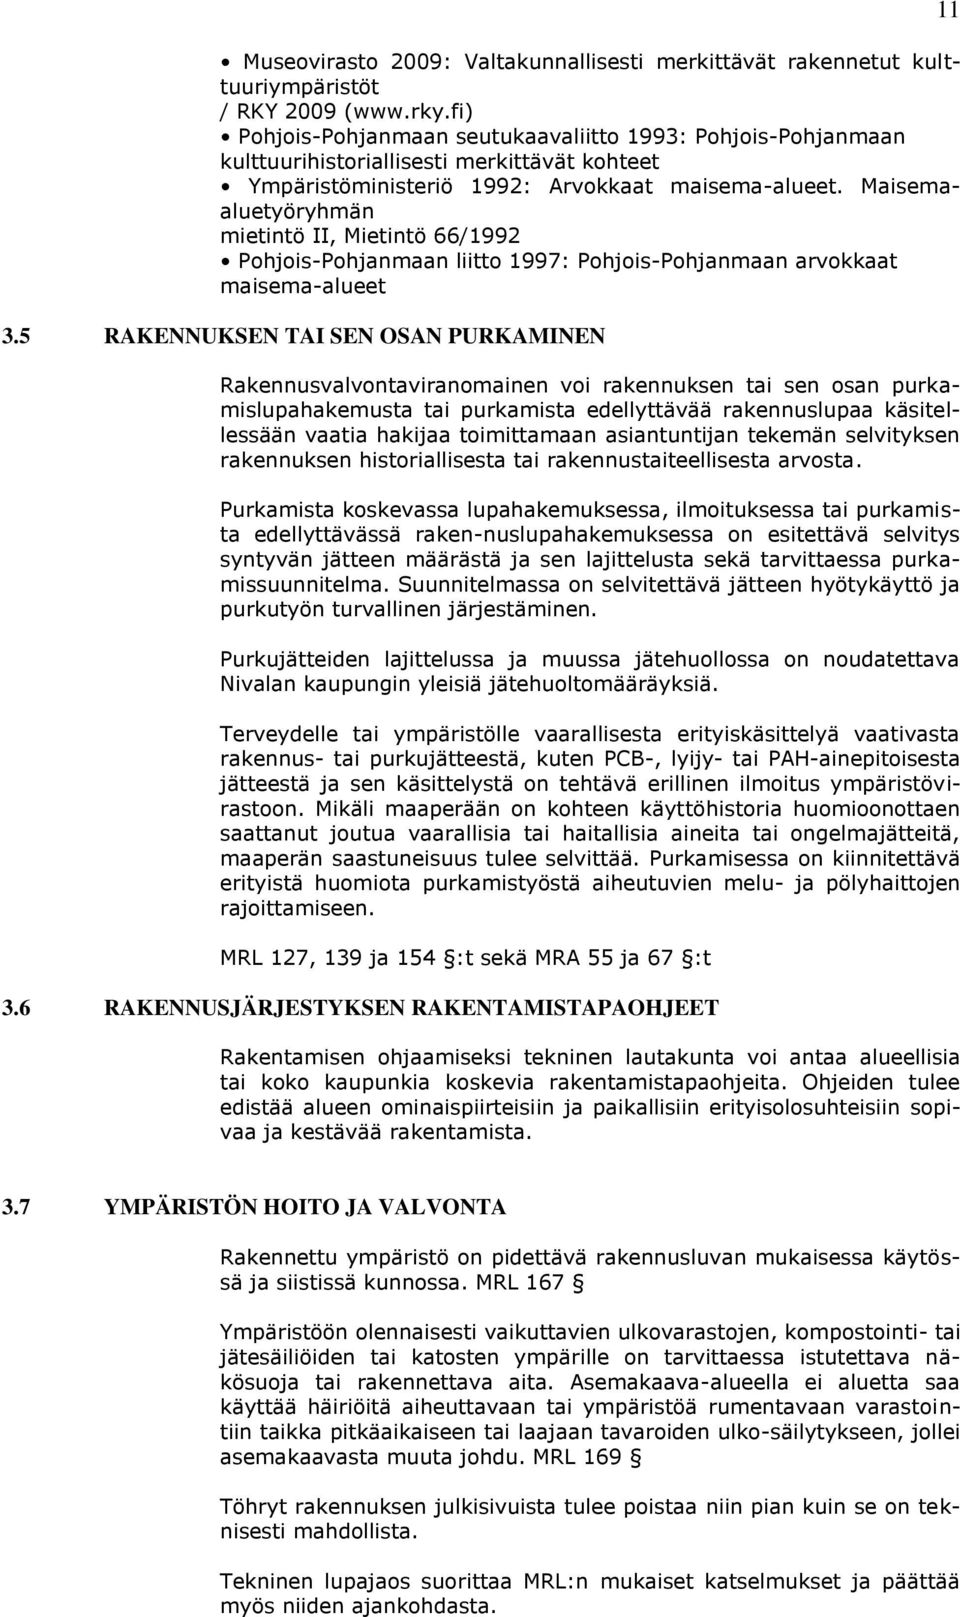 Maisemaaluetyöryhmän mietintö II, Mietintö 66/1992 Pohjois-Pohjanmaan liitto 1997: Pohjois-Pohjanmaan arvokkaat maisema-alueet 3.